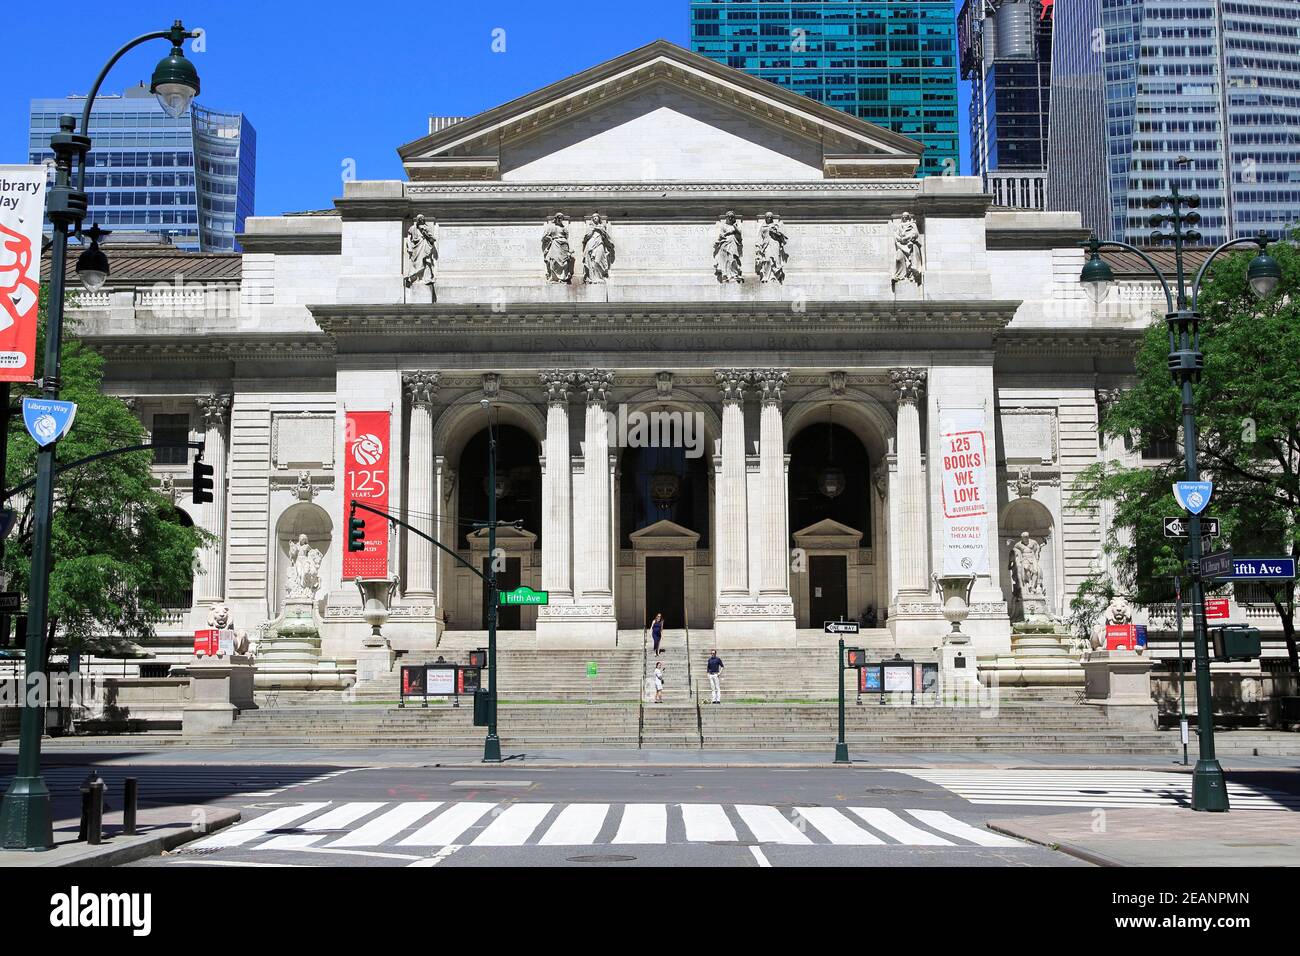 New York Public Library, Stephen A. Schwarzman Gebäude, 5th Avenue, Midtown Manhattan, New York City, New York, Vereinigte Staaten von Amerika Stockfoto